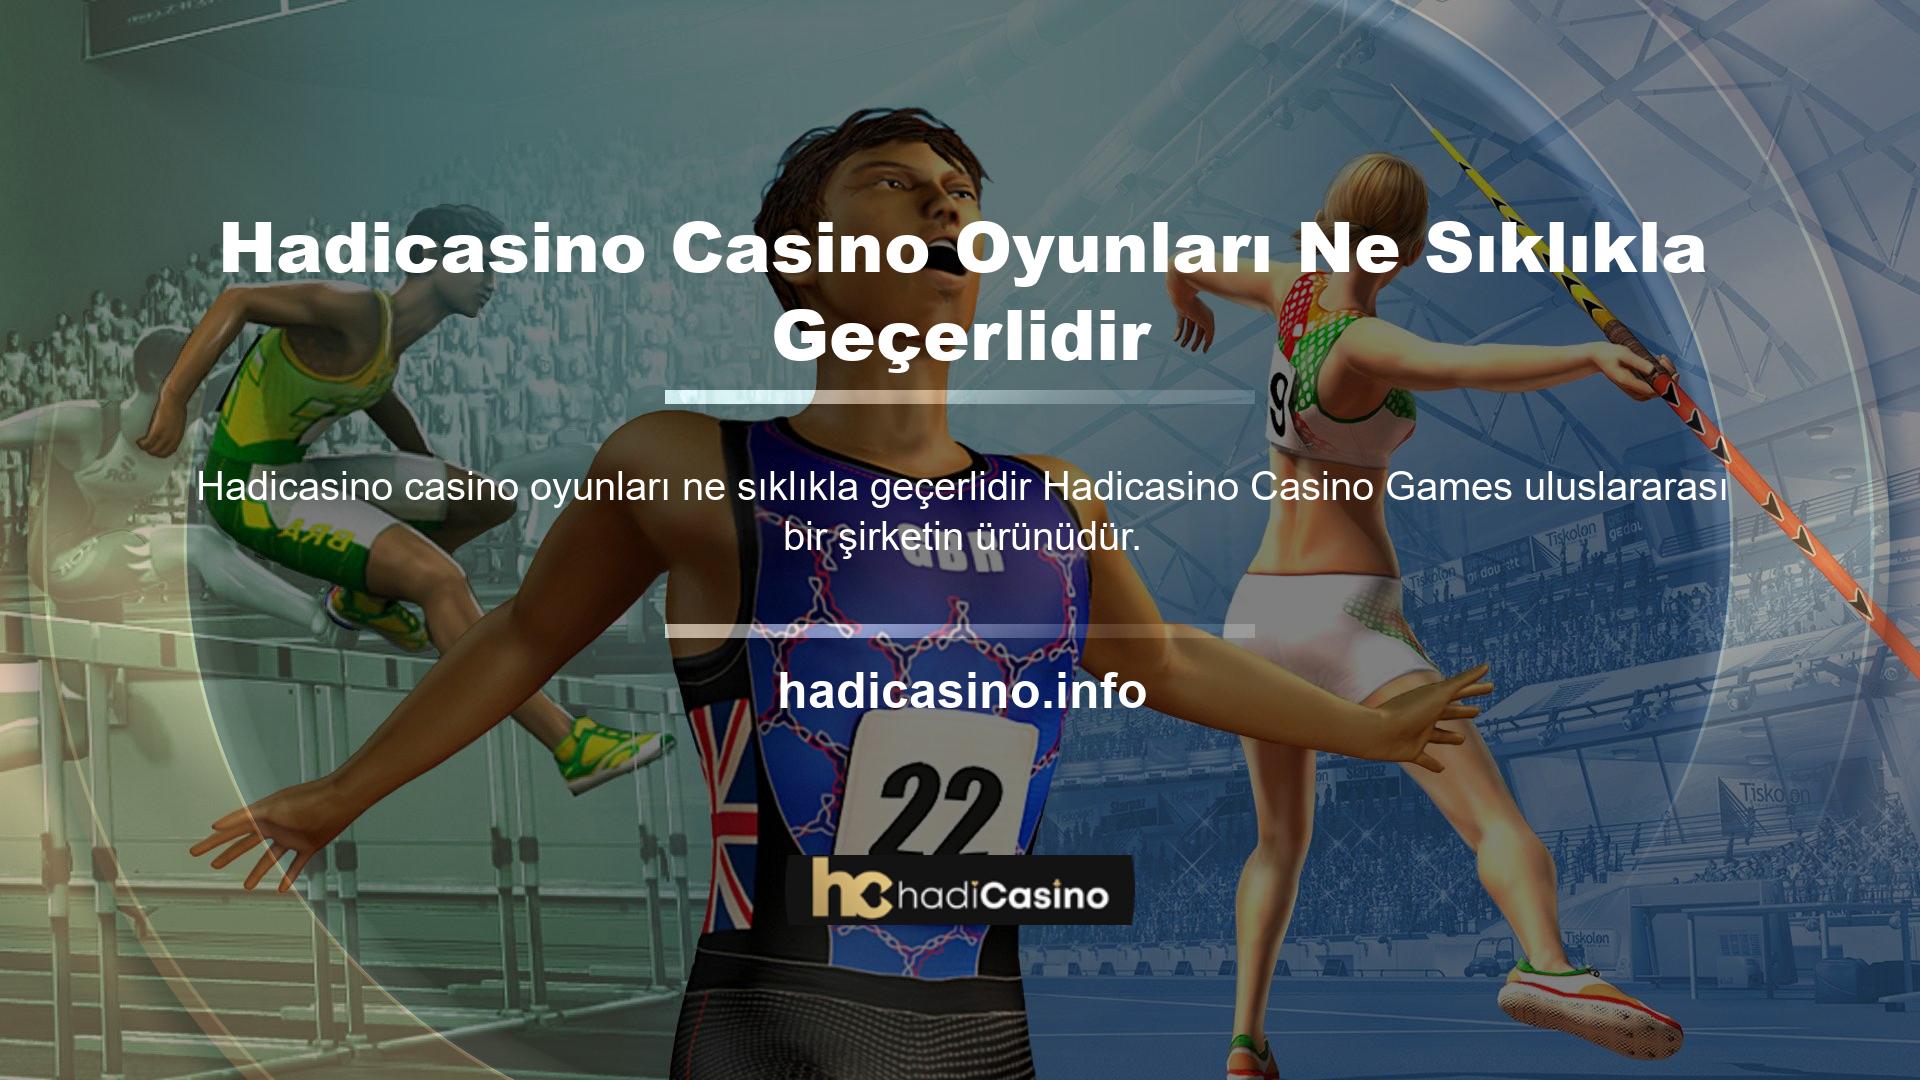 Hadicasino Slots, her zaman olduğu gibi, geniş oyun yelpazesi ve premium içerikle kullanıcılara benzersiz bir casino deneyimi sunarak casino oyun adreslerini yeniden canlandırıyor ve küresel oyun endüstrisine yeni bir soluk getiriyor